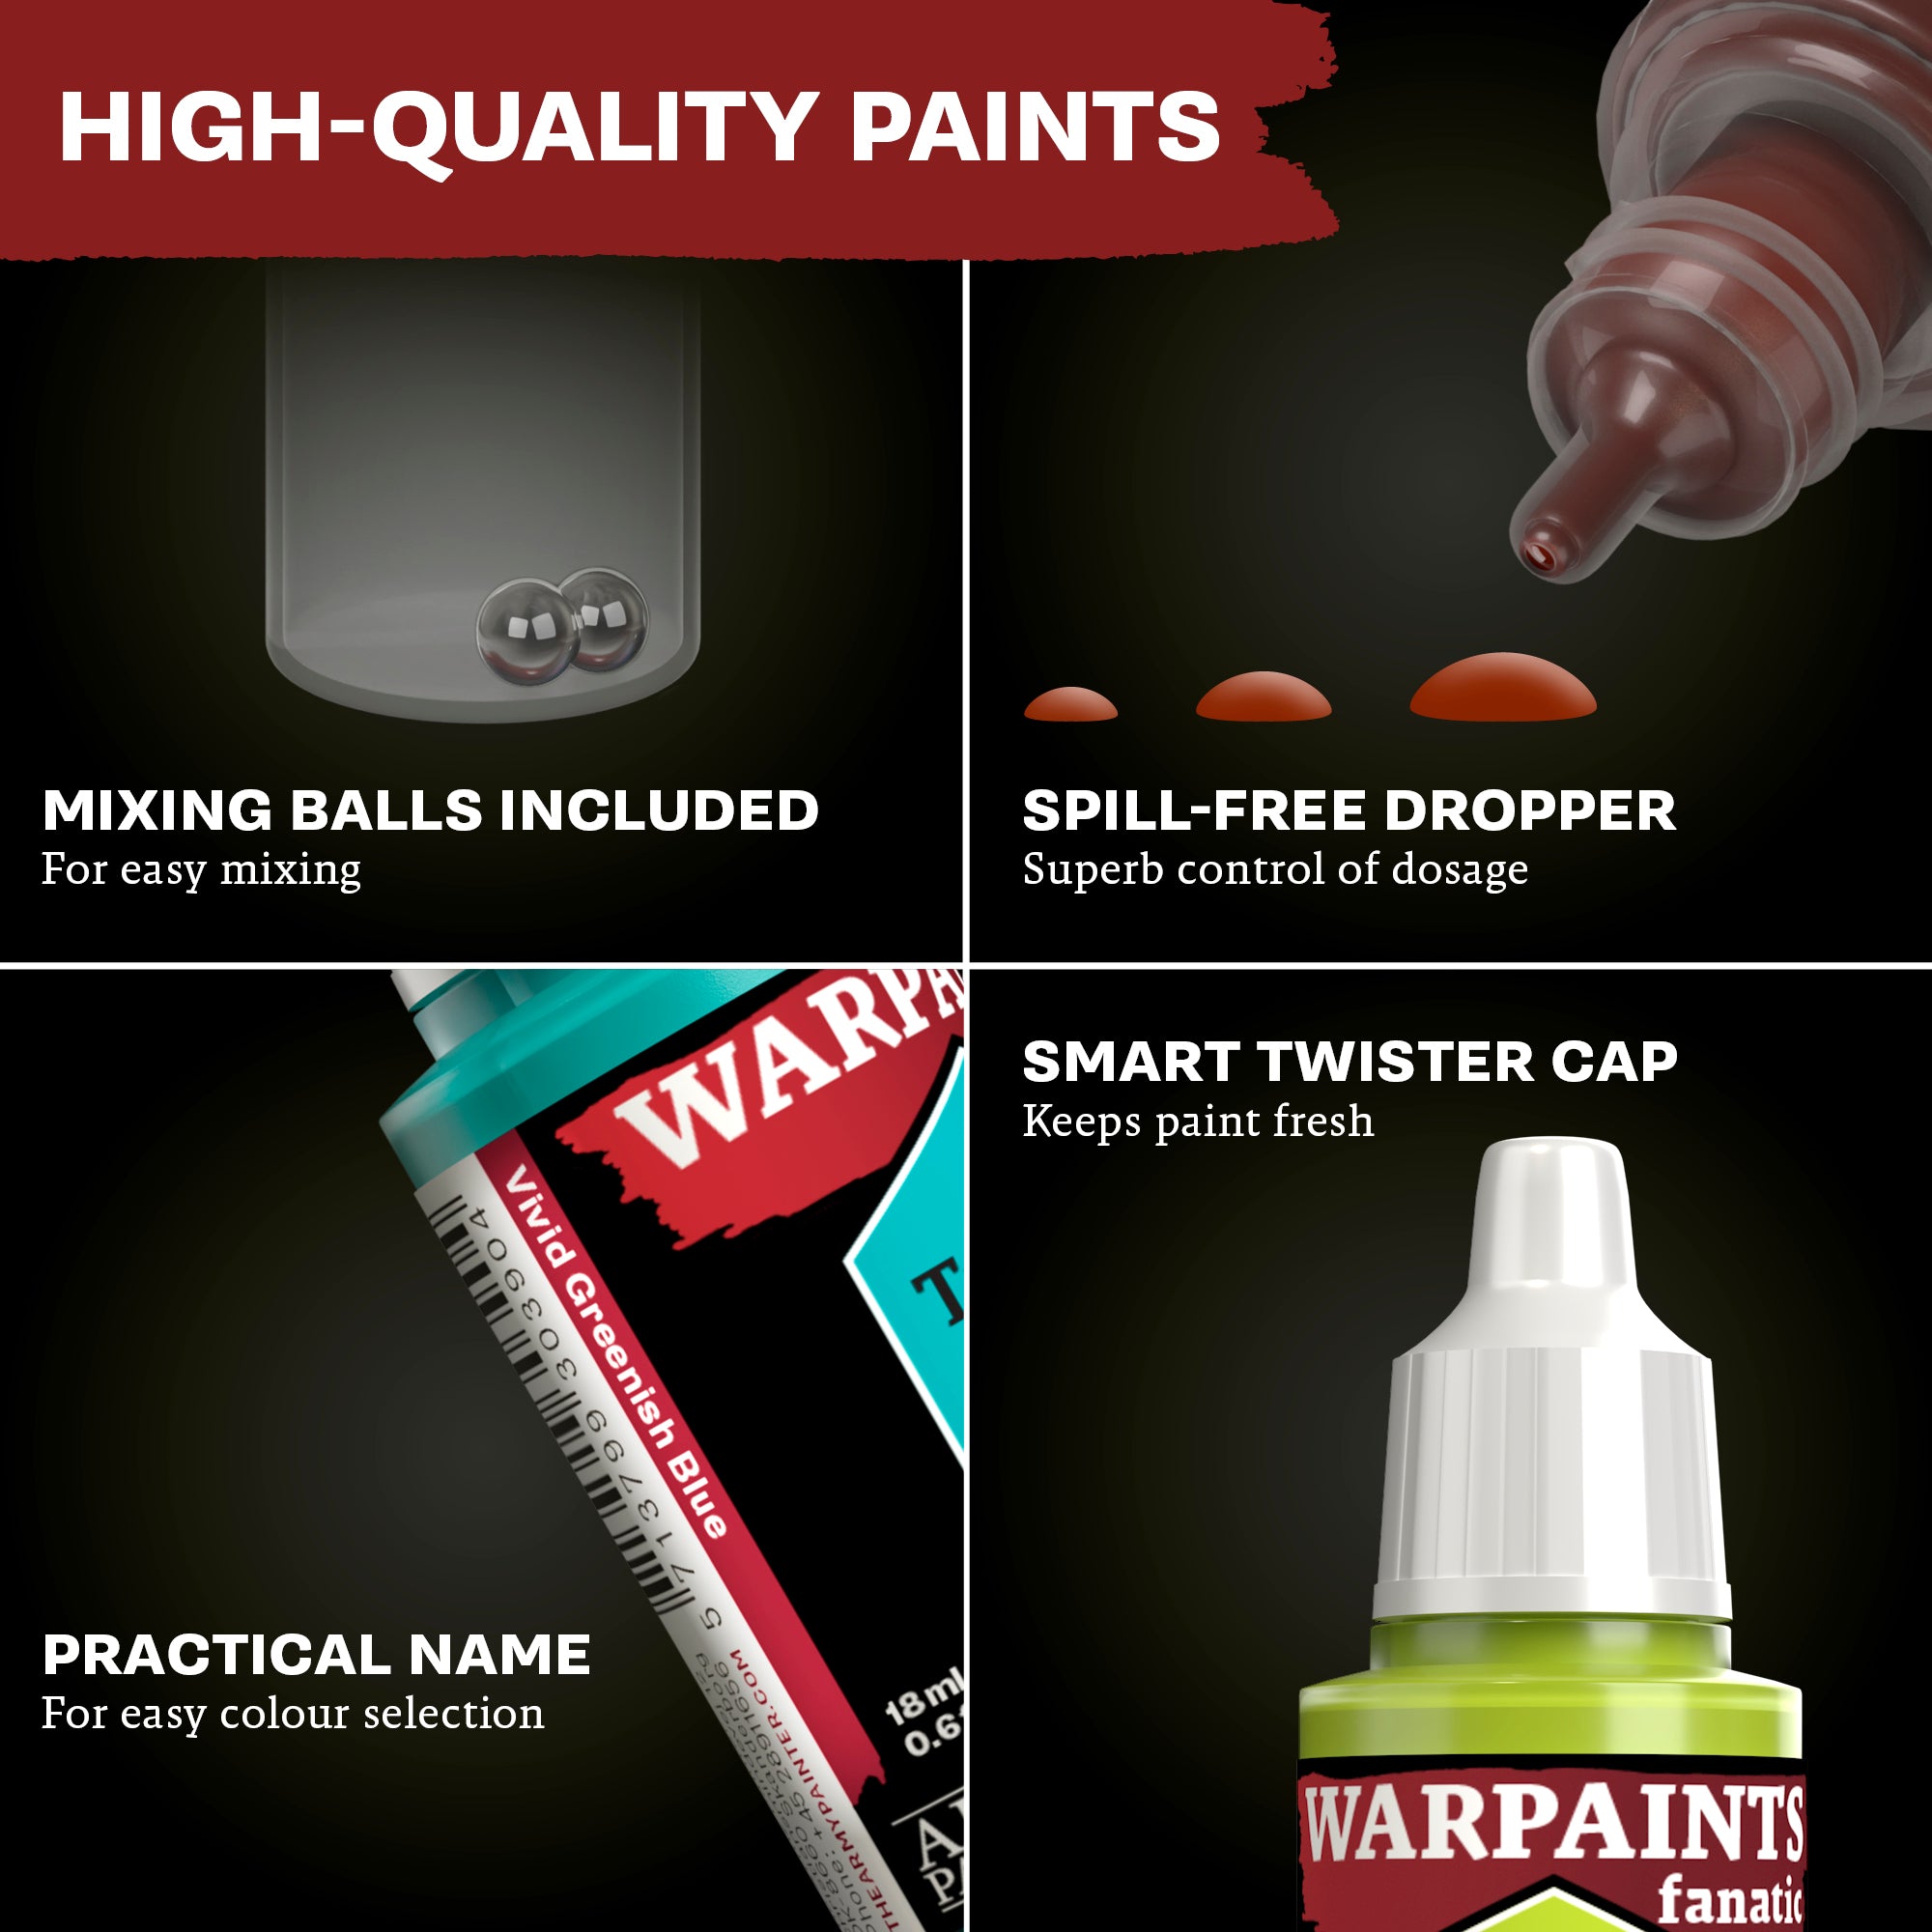 Warpaints Fanatic: Washes Paint Set - Combo